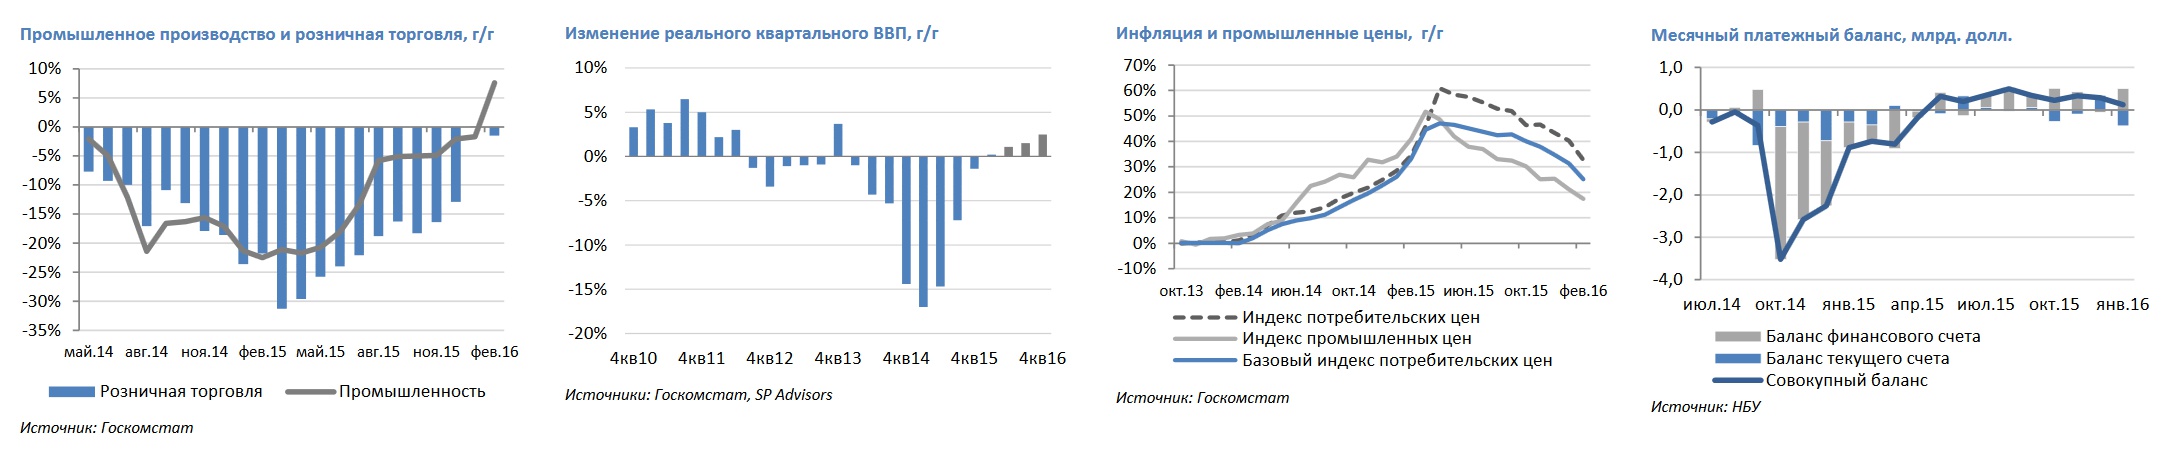  Макроэкономический обзор Украины: убедительные признаки восстановления